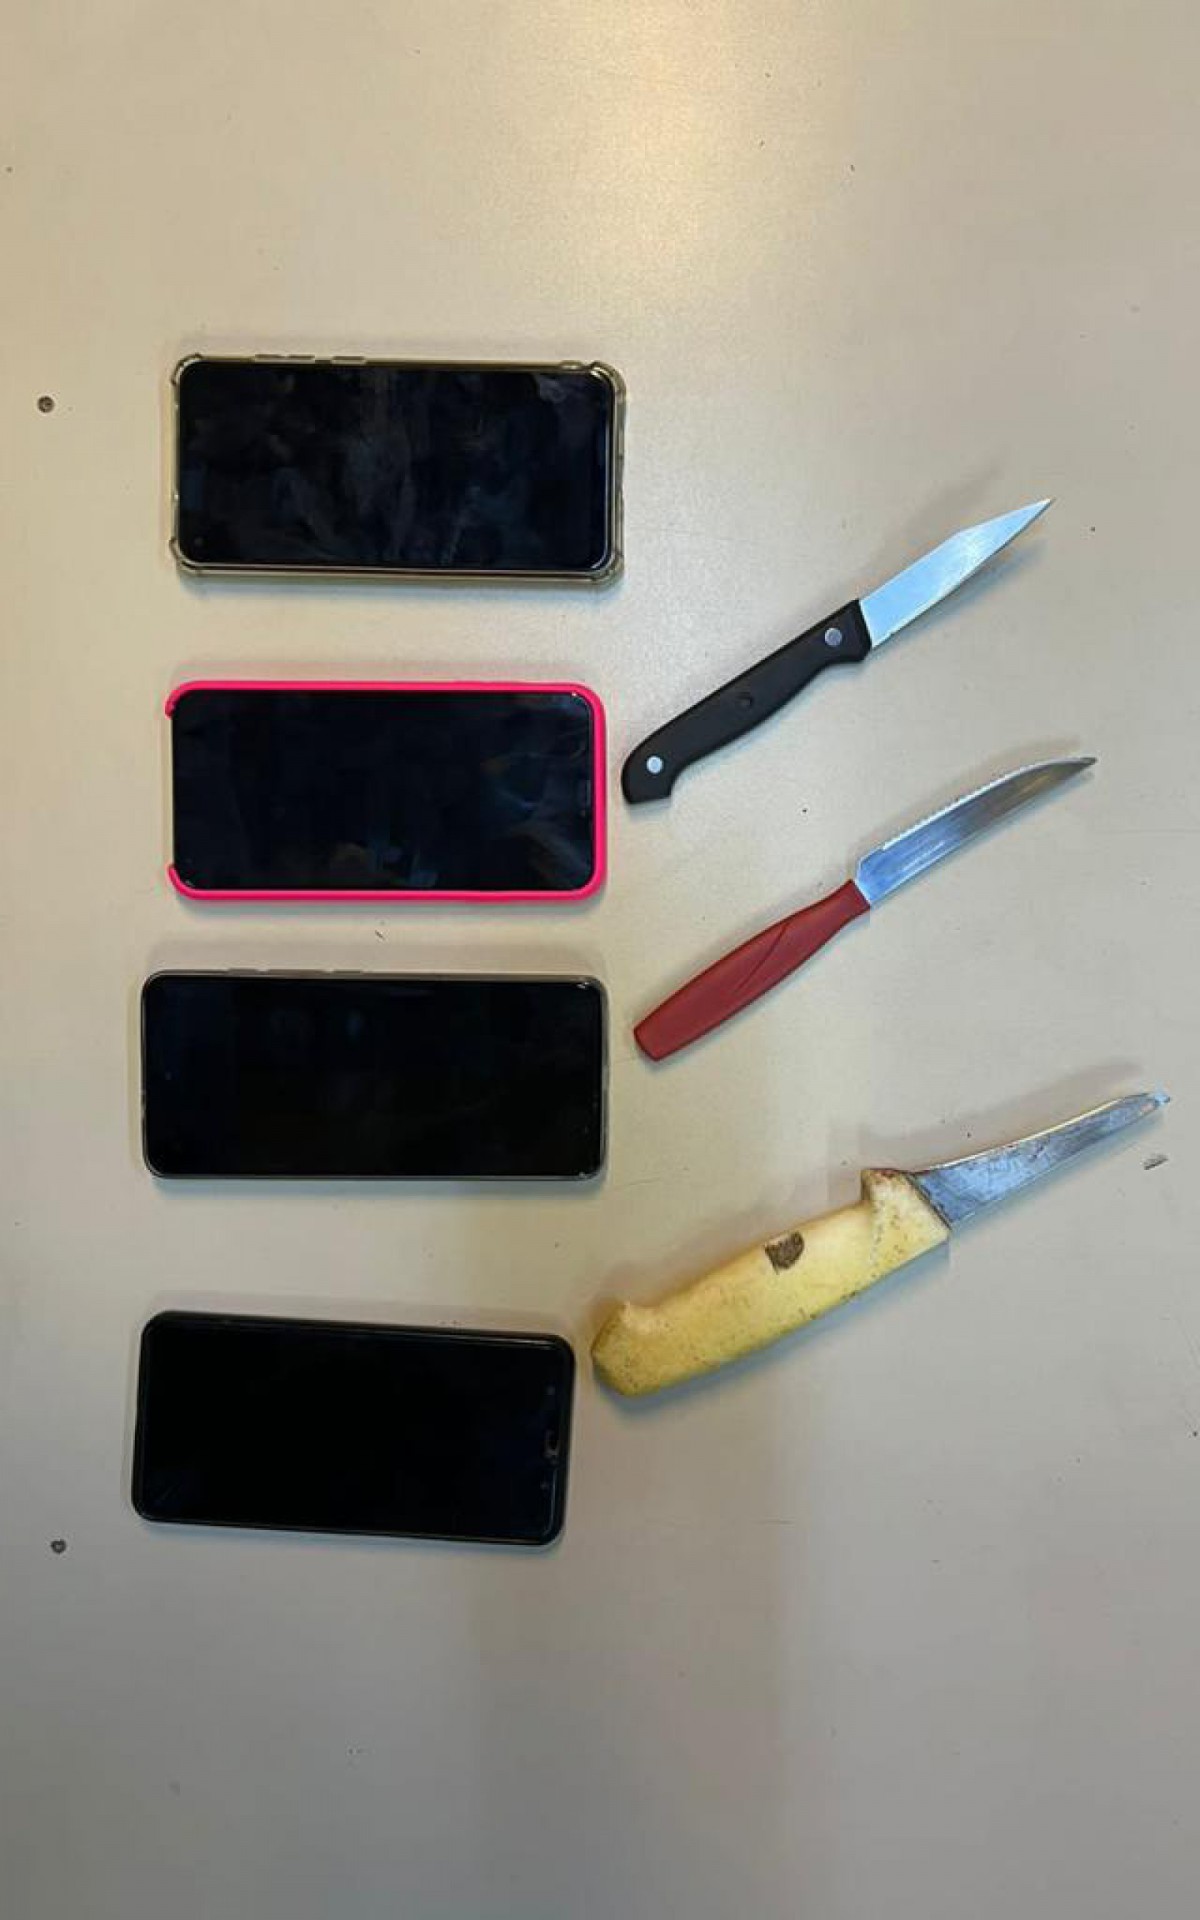 Polícia apreendeu com o acusado facas e celulares roubados durante o cárcere - Divulgação